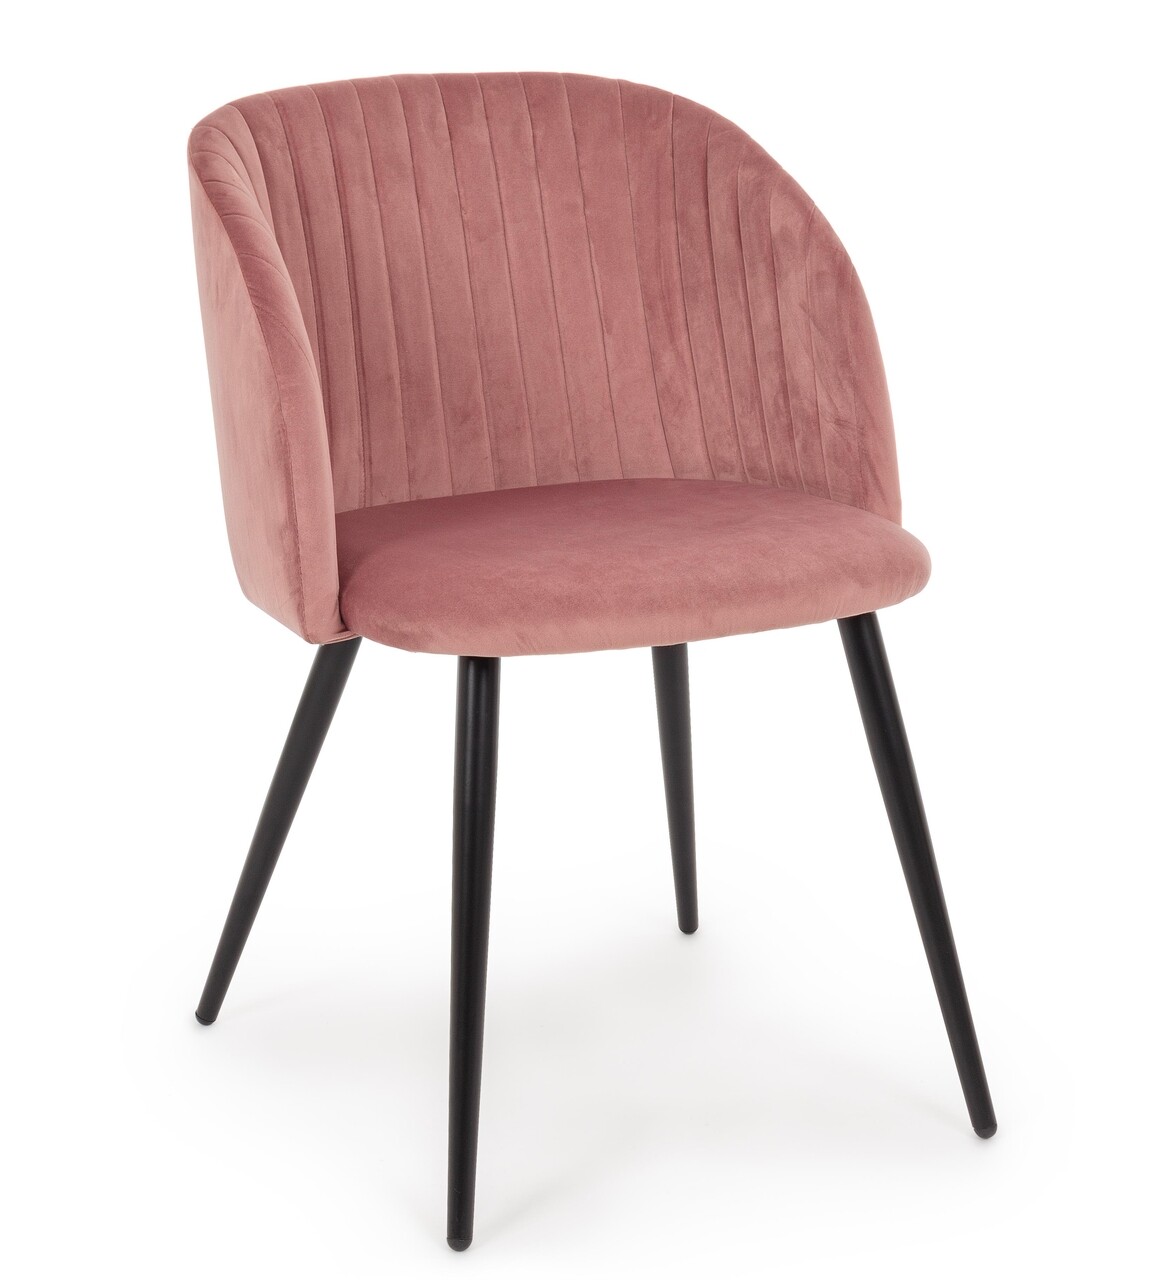 Queen szék, bizzotto, bársony, 53x57x81.5 cm, púder rózsaszín